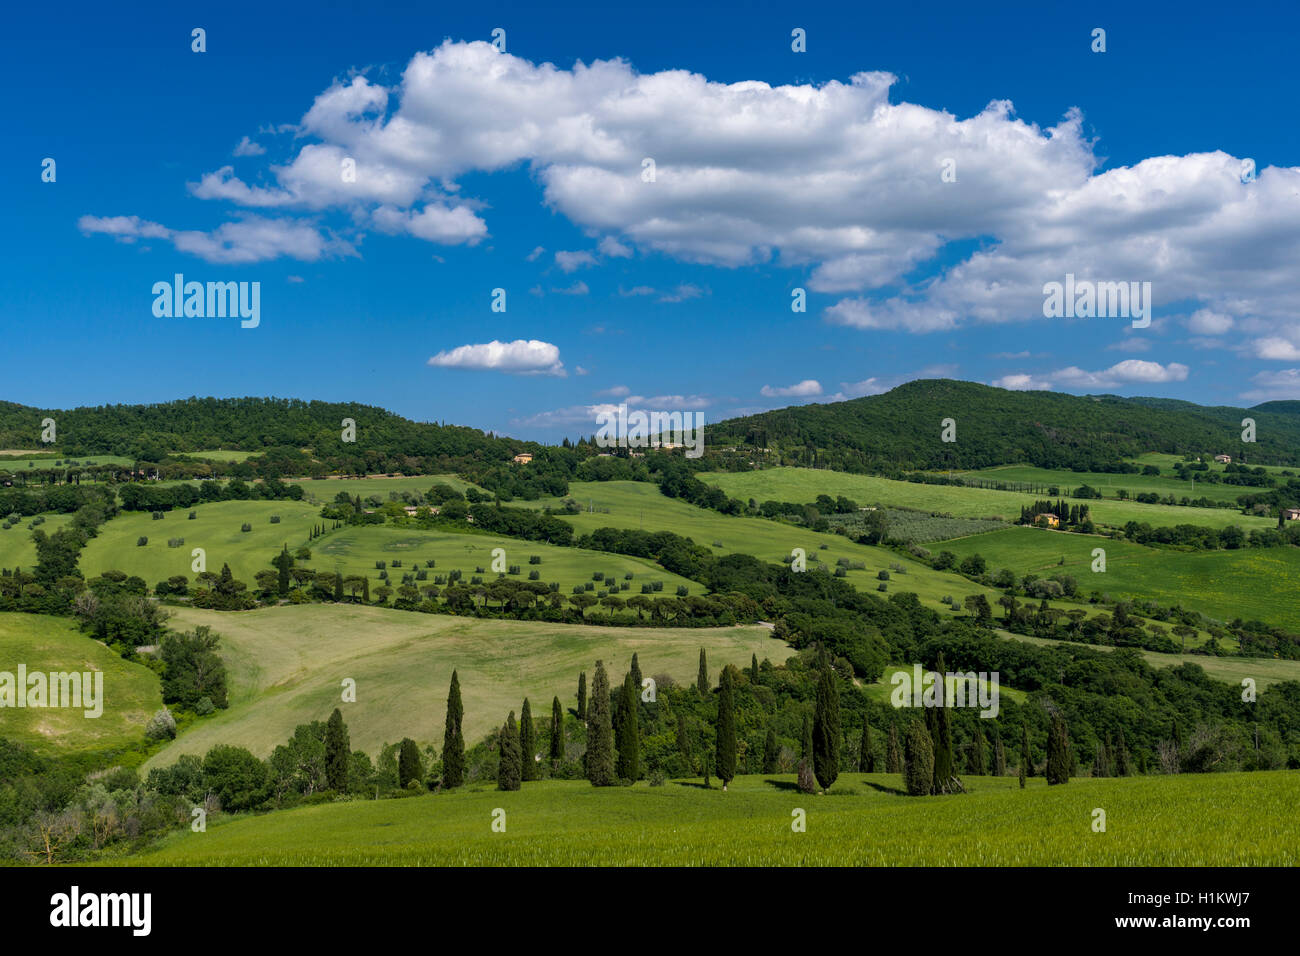 Typische Grün der toskanischen Landschaft im Val d'Orcia mit Hügeln, Bäumen, Getreidefelder, Zypressen und blauen bewölkten Himmel, La Foce, Toskana Stockfoto